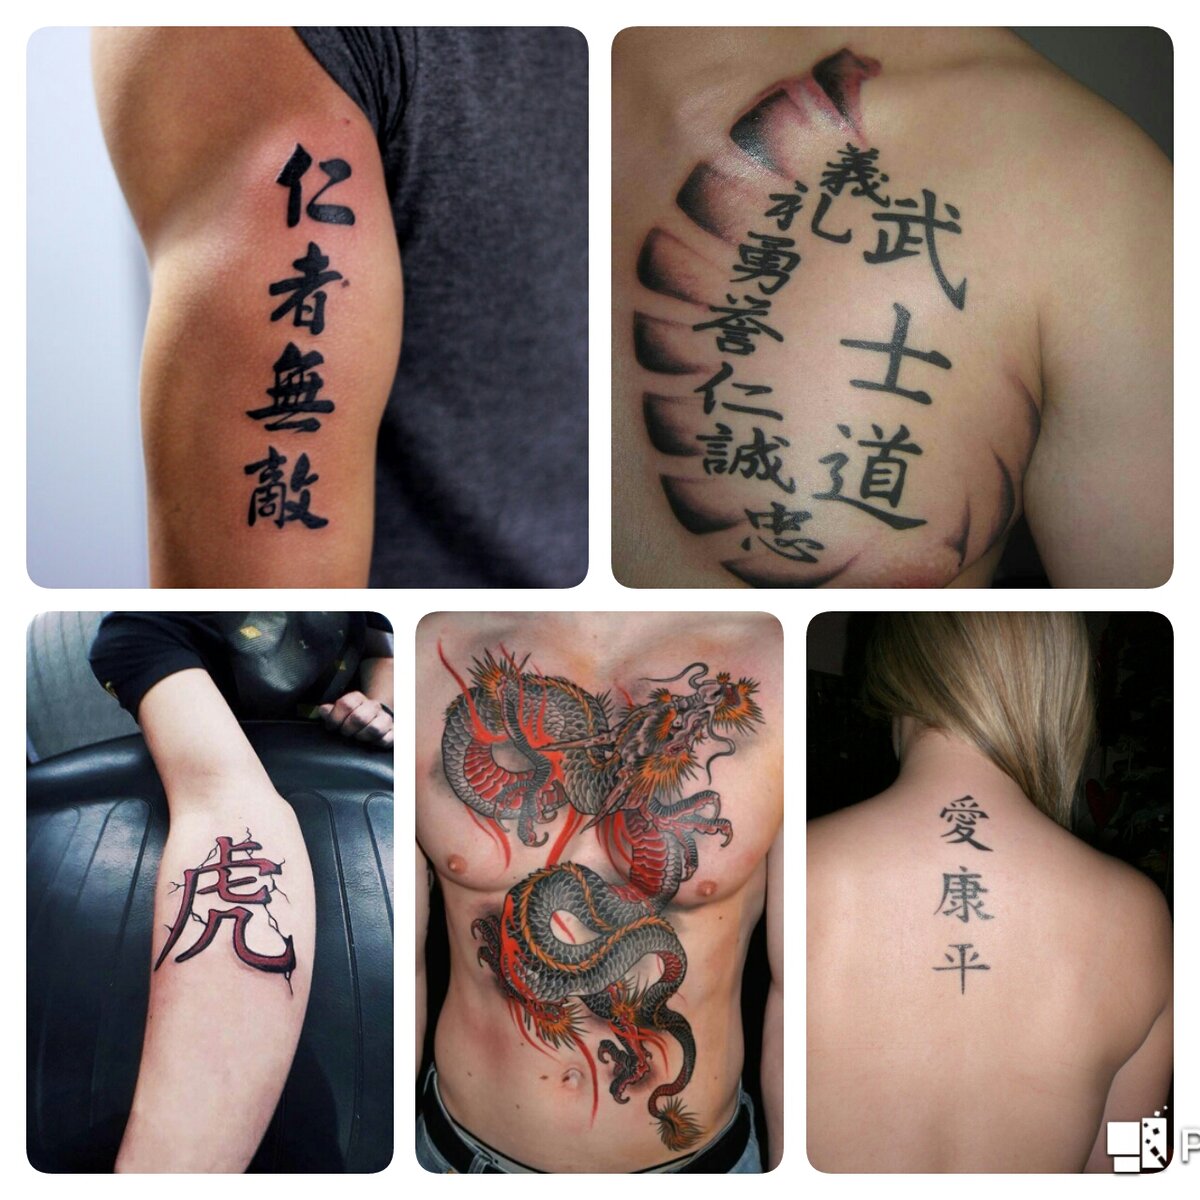 Китайские тату: иероглифы и популярные символы (эскизы и фото)